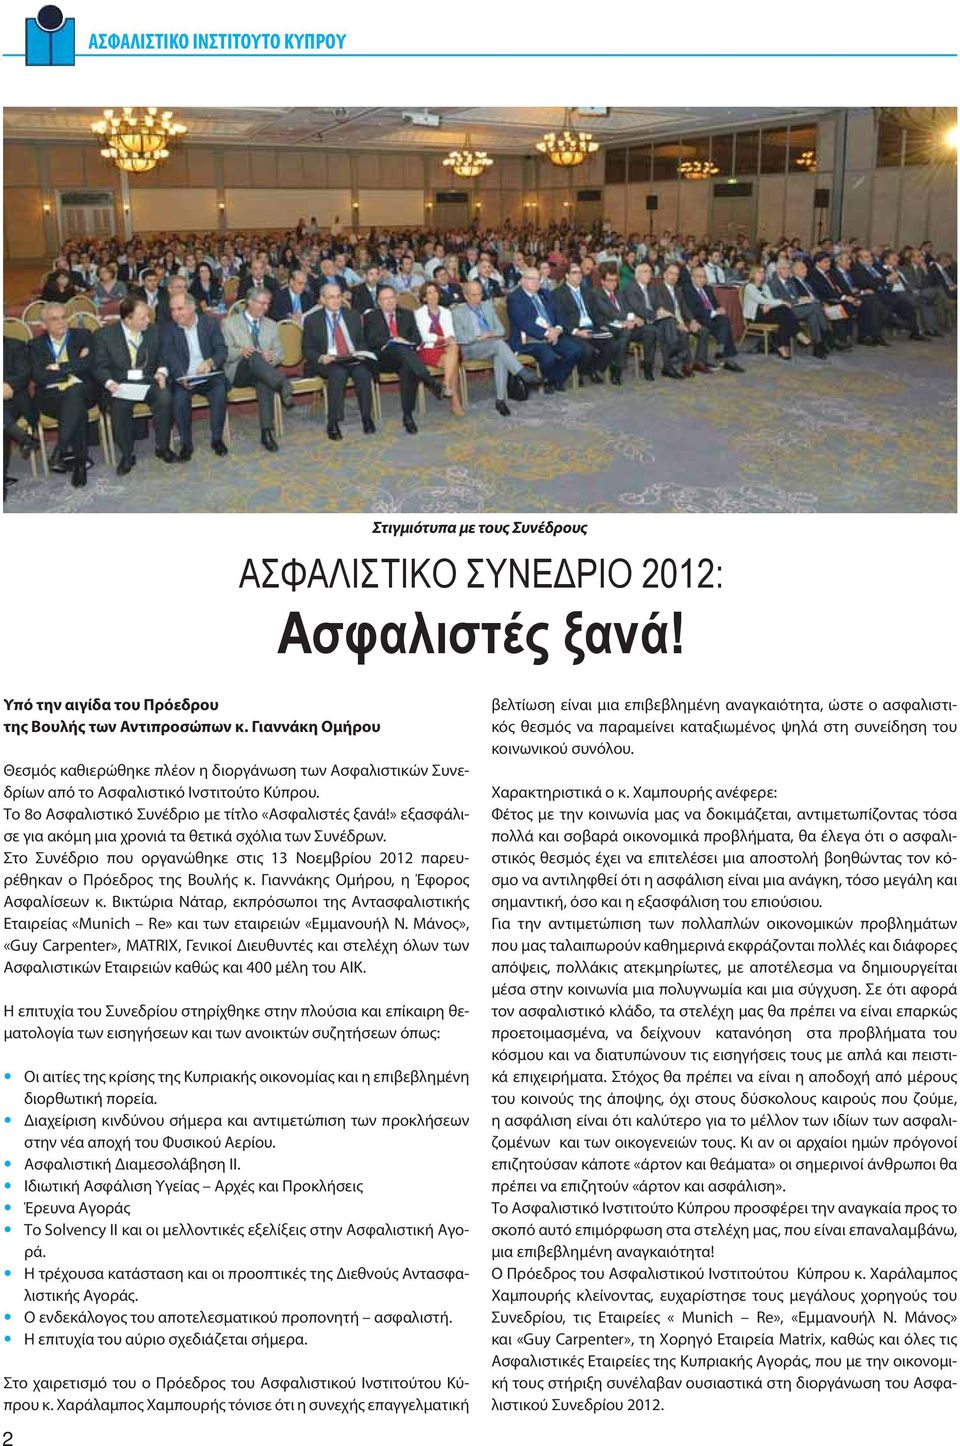 » εξασφάλισε για ακόμη μια χρονιά τα θετικά σχόλια των Συνέδρων. Στο Συνέδριο που οργανώθηκε στις 13 Νοεμβρίου 2012 παρευρέθηκαν ο Πρόεδρος της Βουλής κ. Γιαννάκης Ομήρου, η Έφορος Ασφαλίσεων κ.